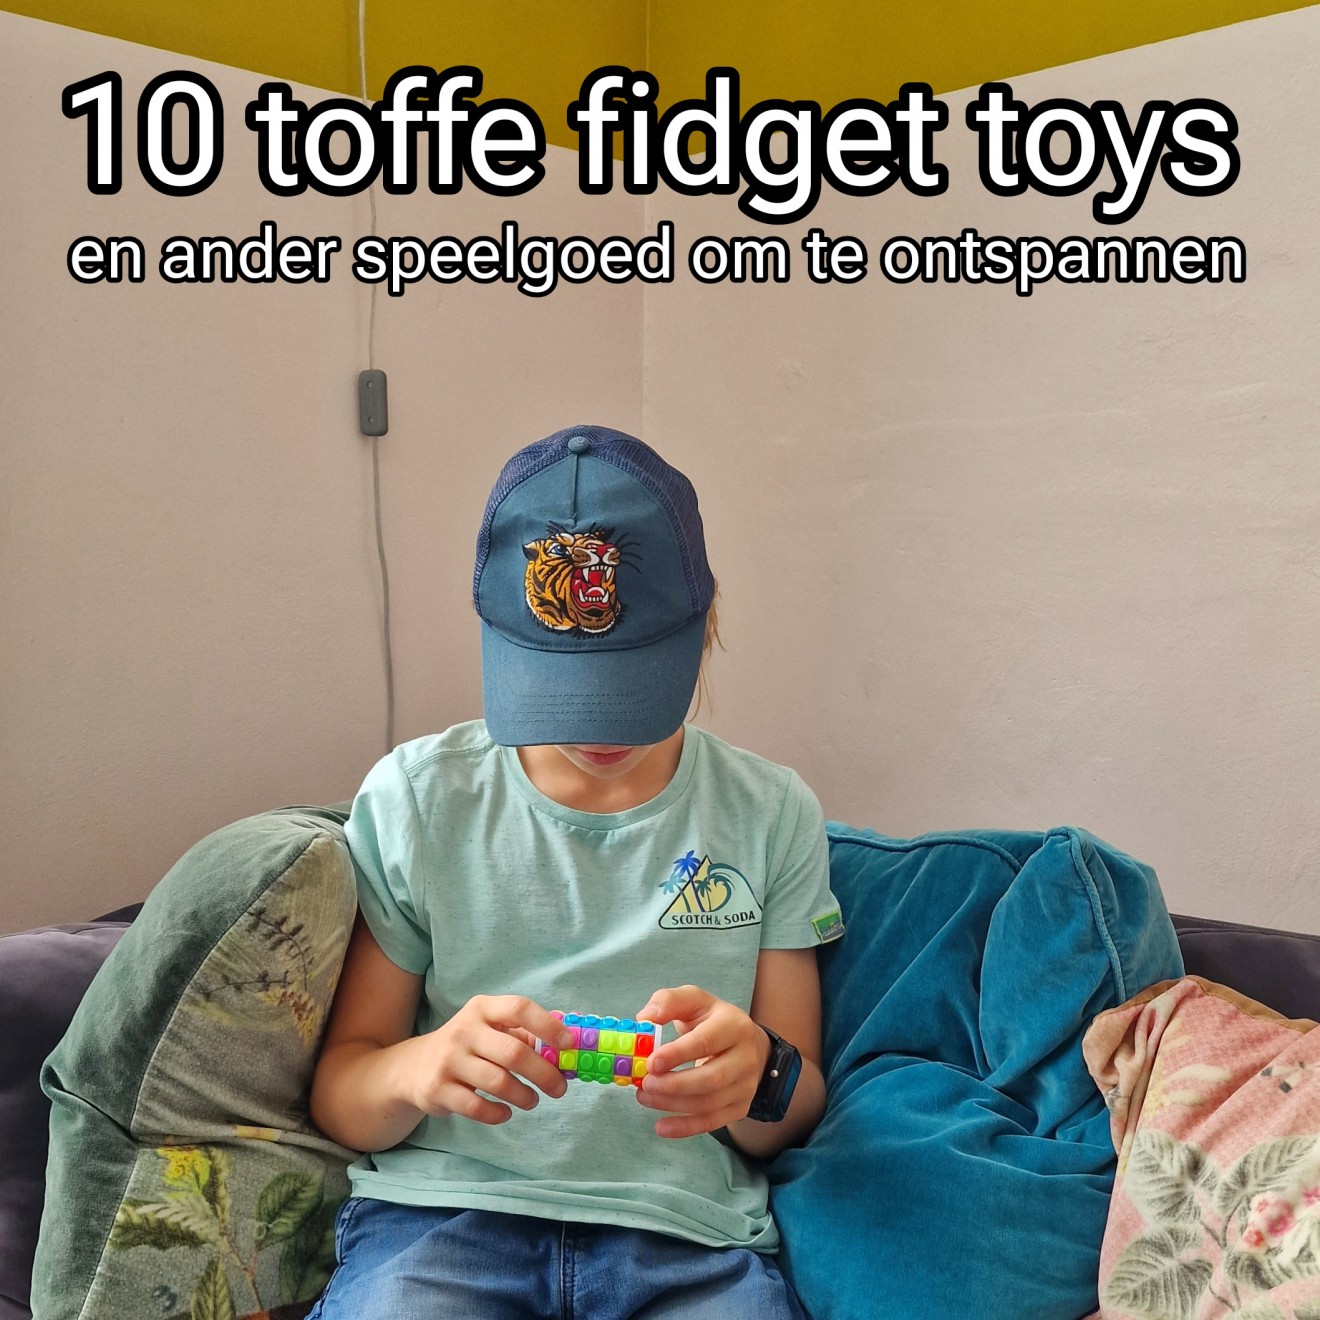 10 fidget toys en ander speelgoed voor kinderen om te ontspannen